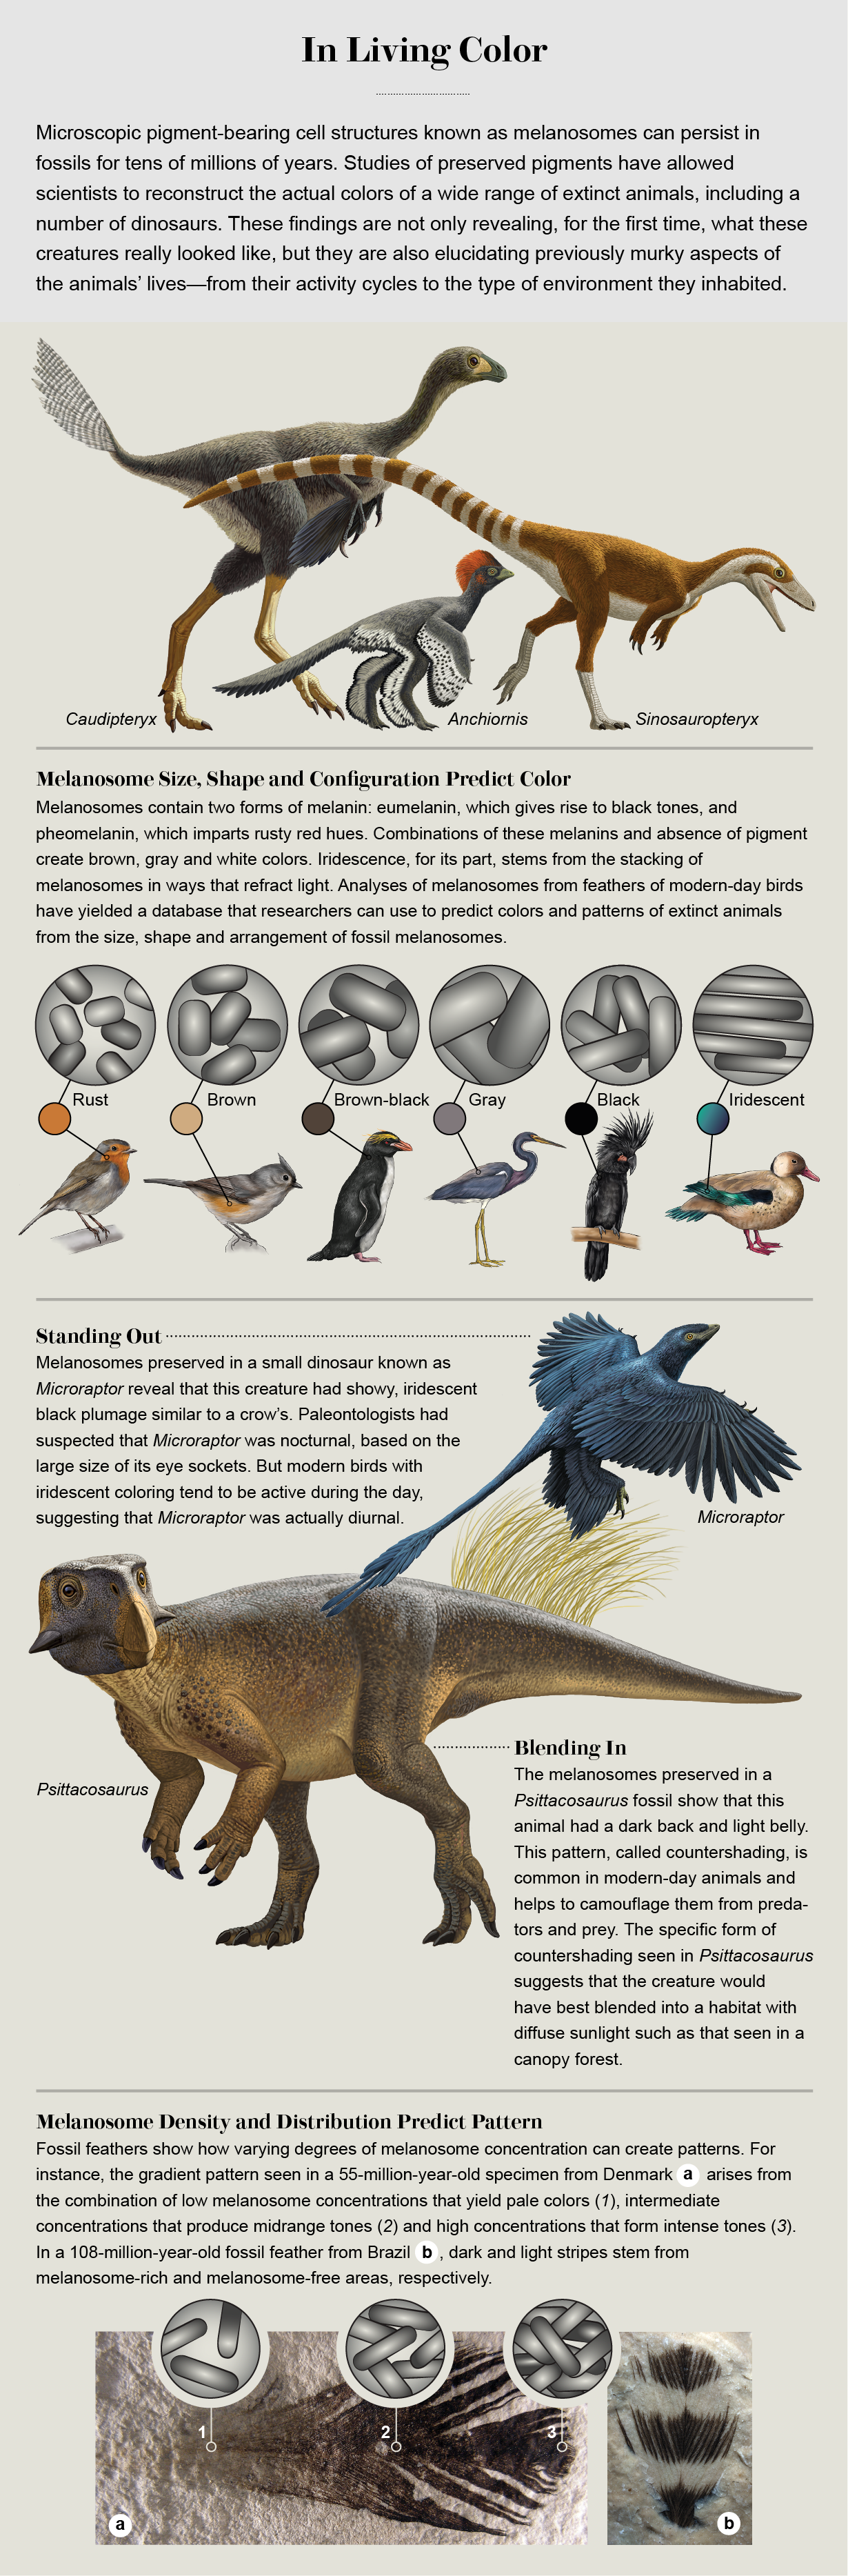 Illustrations by Ral Martn (dinosaurs) and Jillian Ditner (birds and melanosomes)